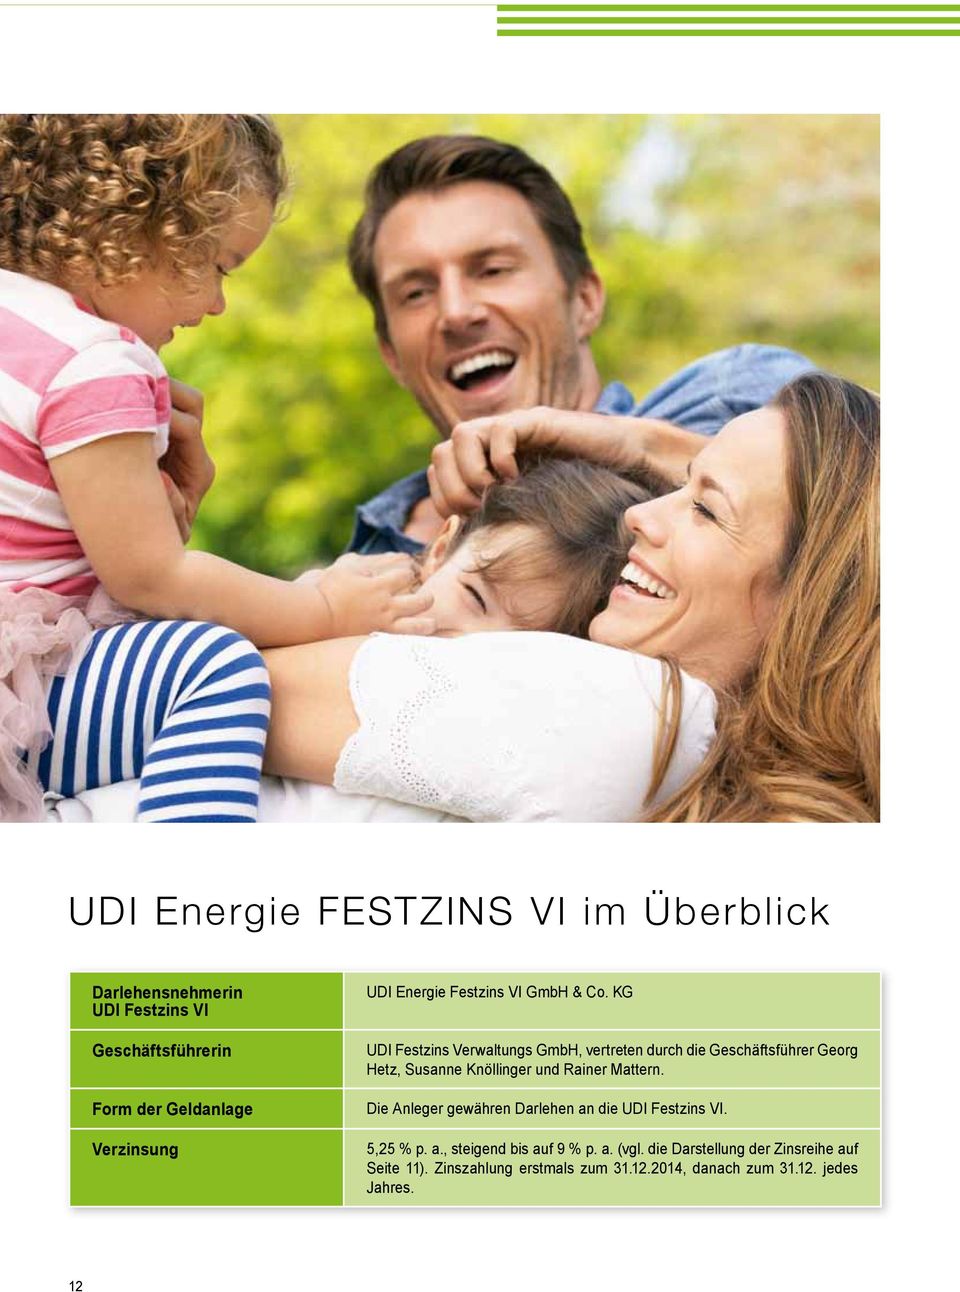 KG UDI Festzins Verwaltungs GmbH, vertreten durch die Geschäftsführer Georg Hetz, Susanne Knöllinger und Rainer Mattern.